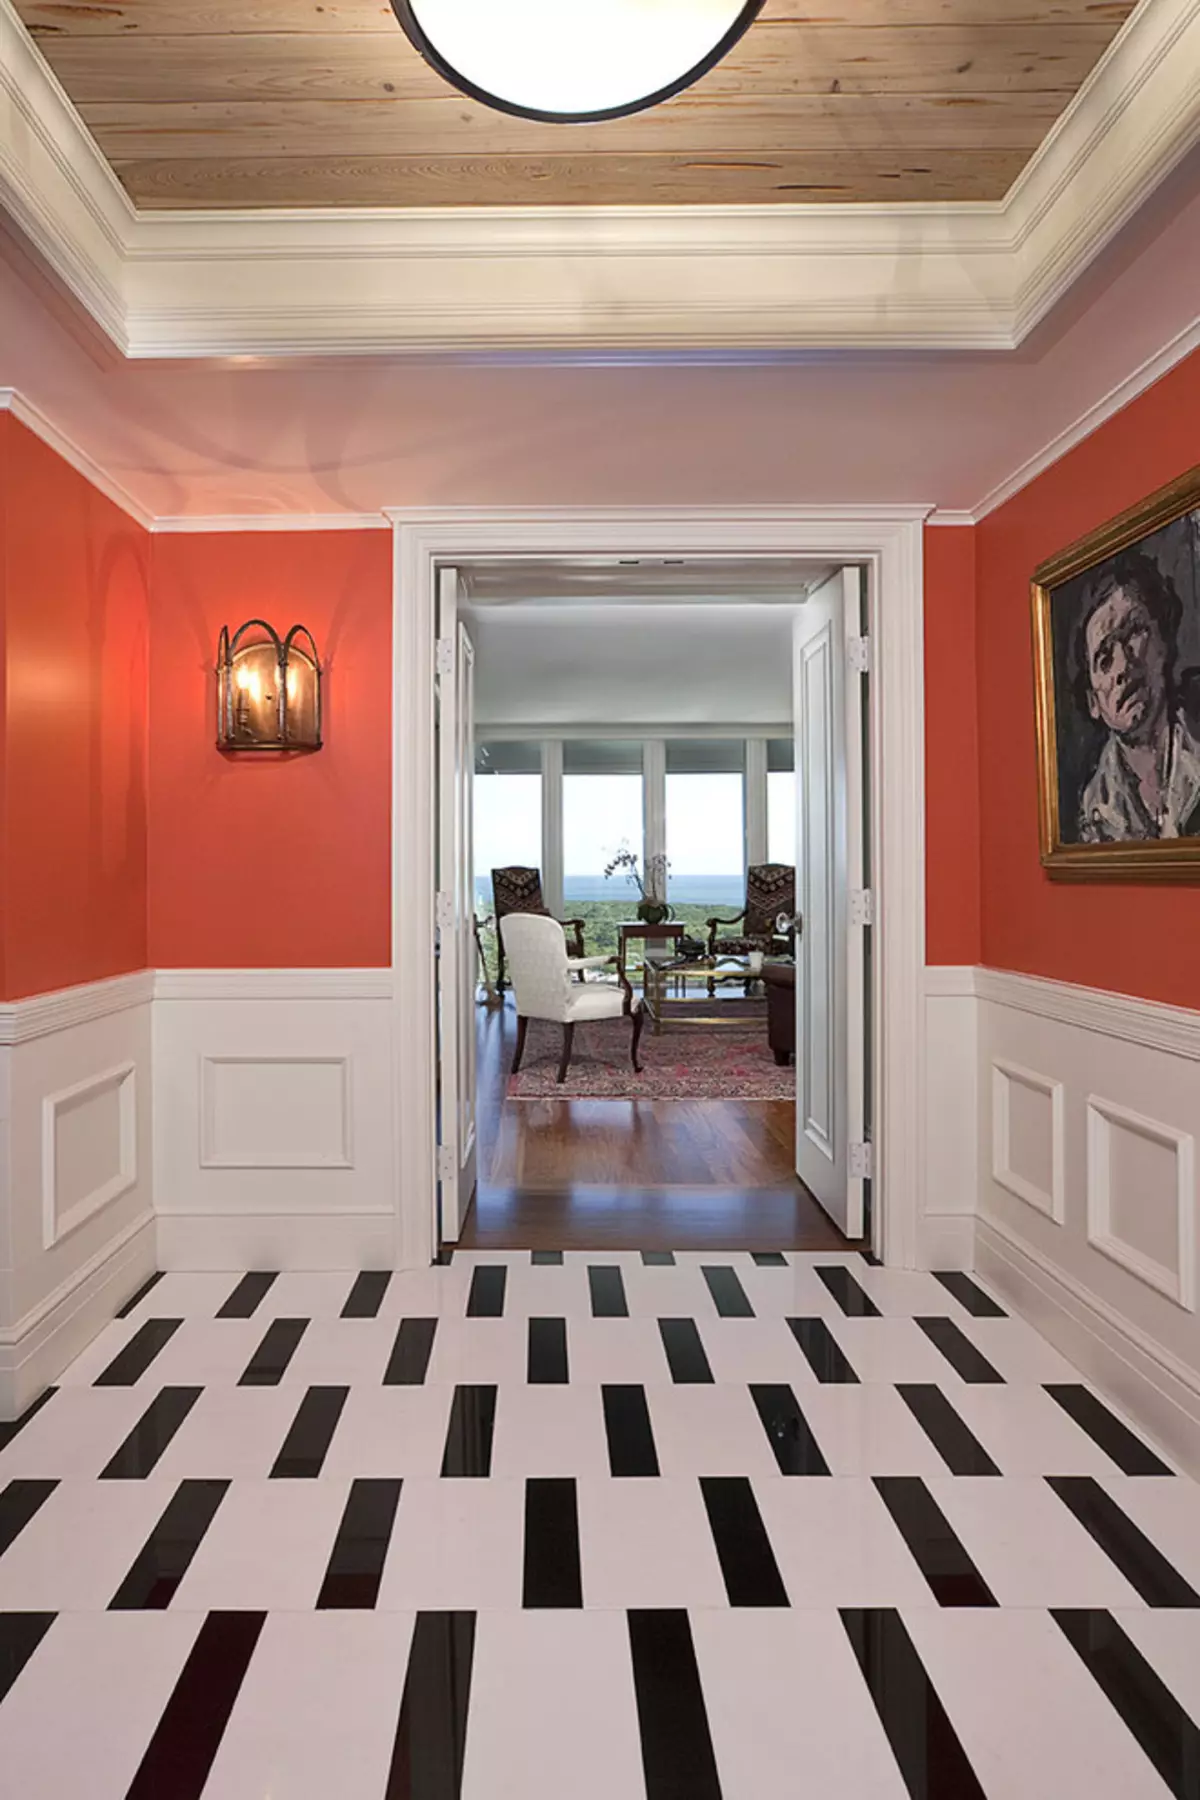 Flise på gulvet i korridoren (99 billeder): Valg til design af gulvfliser i gangen. Mønstre lavet af porcelæn stentøj, fliserceller og andre smukke muligheder 9181_30